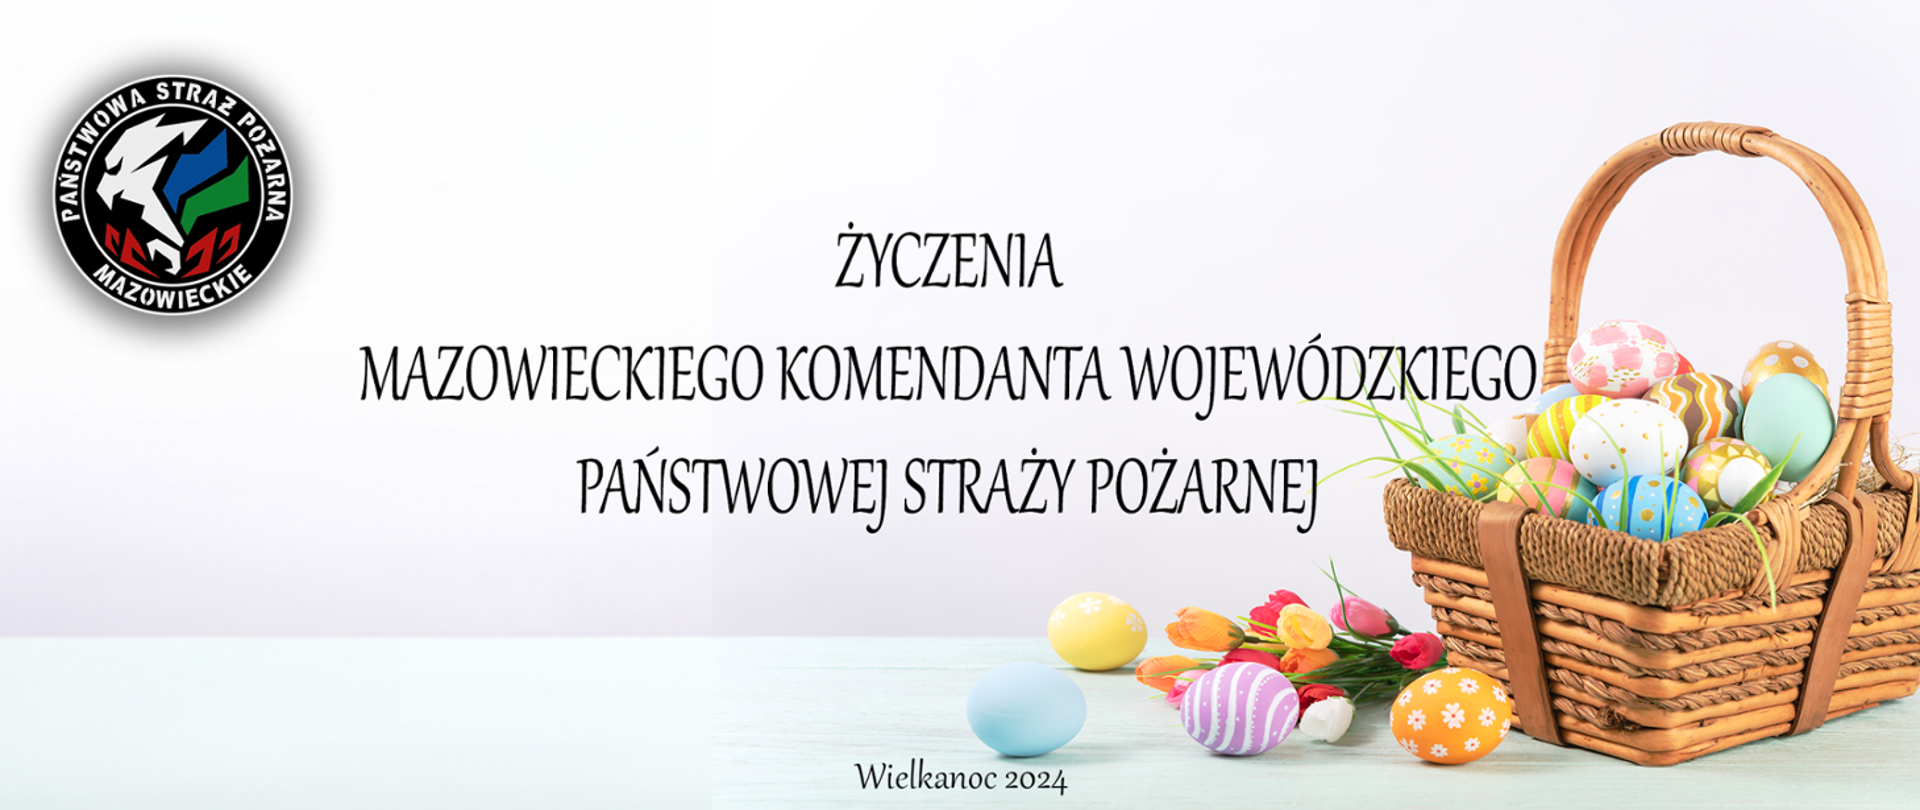 Życzenia Mazowieckiego Komendanta Wojewódzkiego PSP z okazji Świąt Wielkanocnych